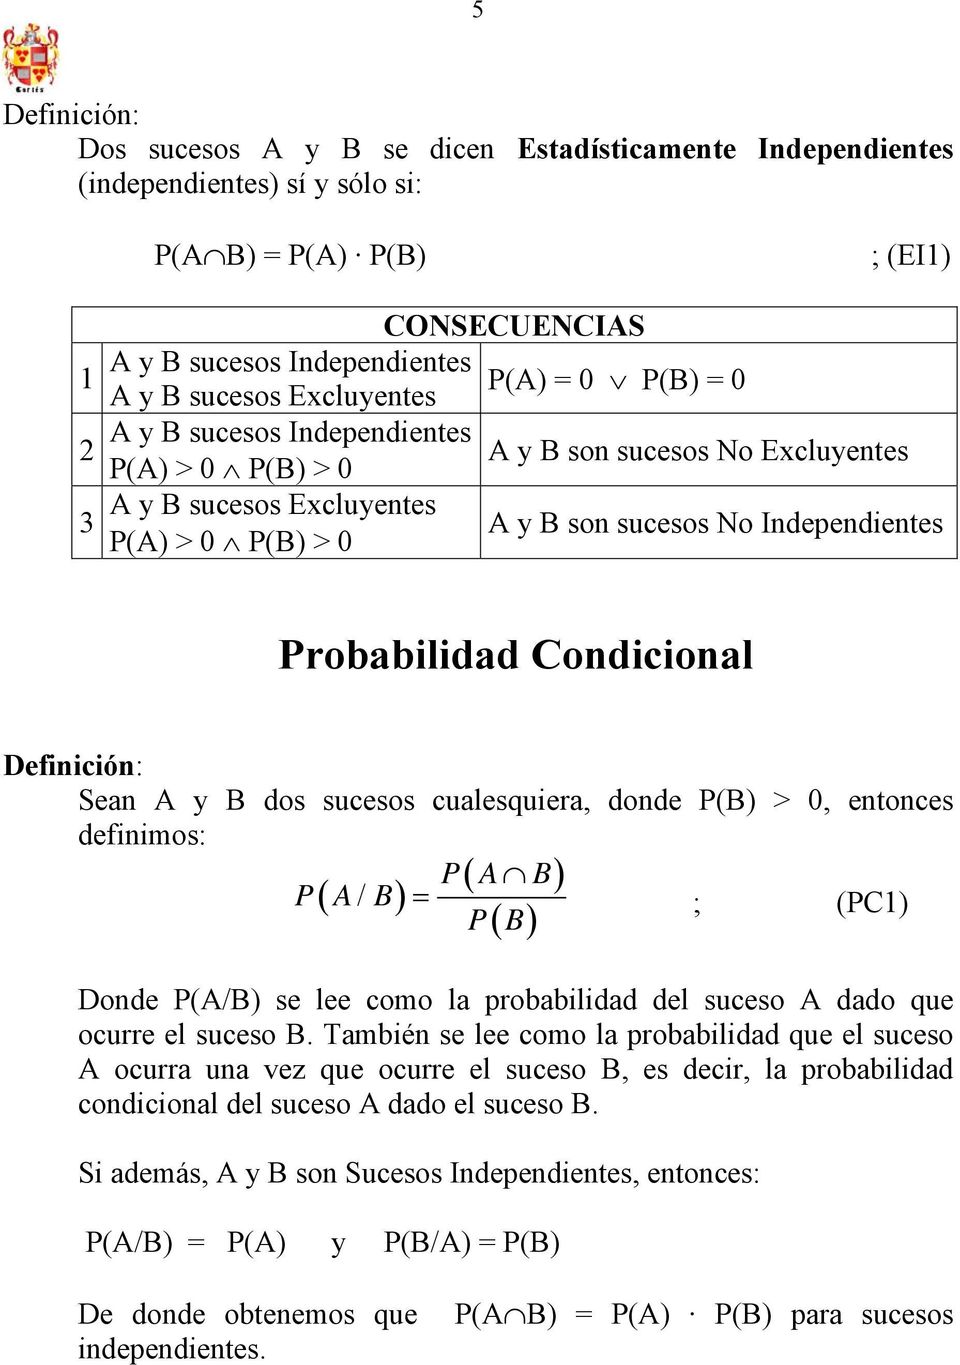 Definición: Sean A y B dos sucesos cualesquiera, donde P(B) > 0, entonces definimos: P( A B) P( A/ B) ; (PC) P B ( ) Donde P(A/B) se lee como la probabilidad del suceso A dado que ocurre el suceso B.